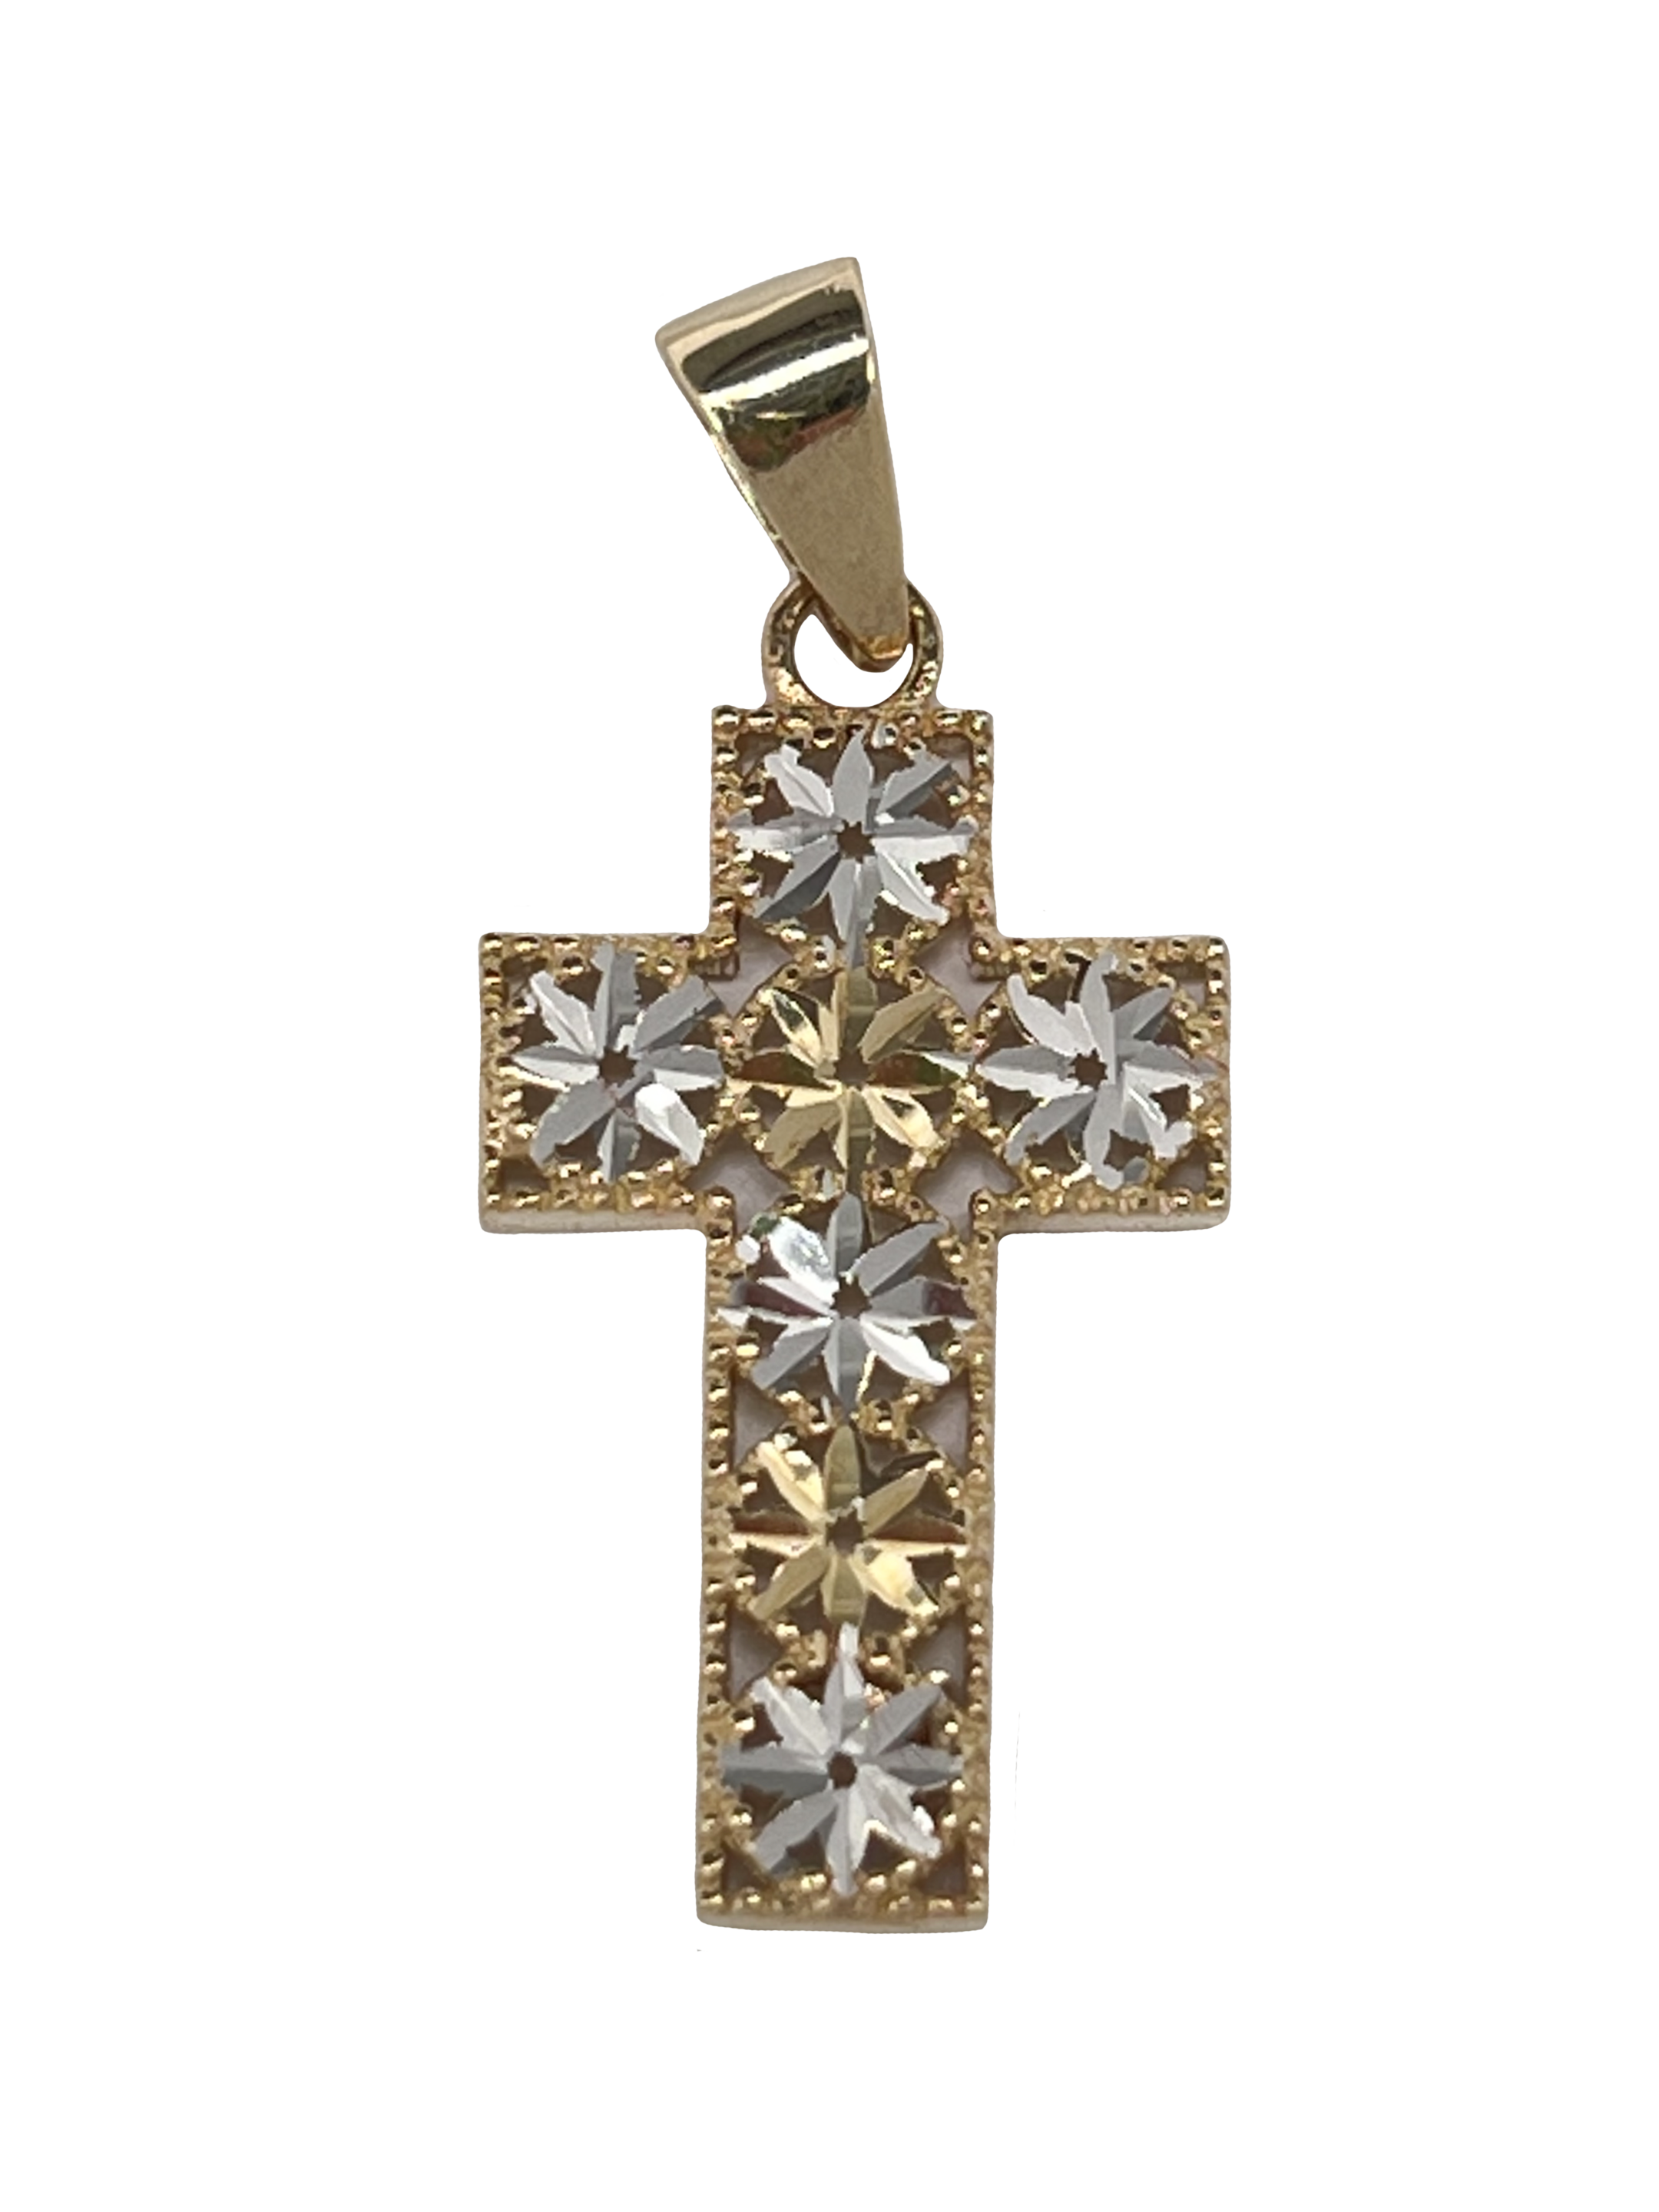 Colgante cruz de oro elaborado en oro combinado